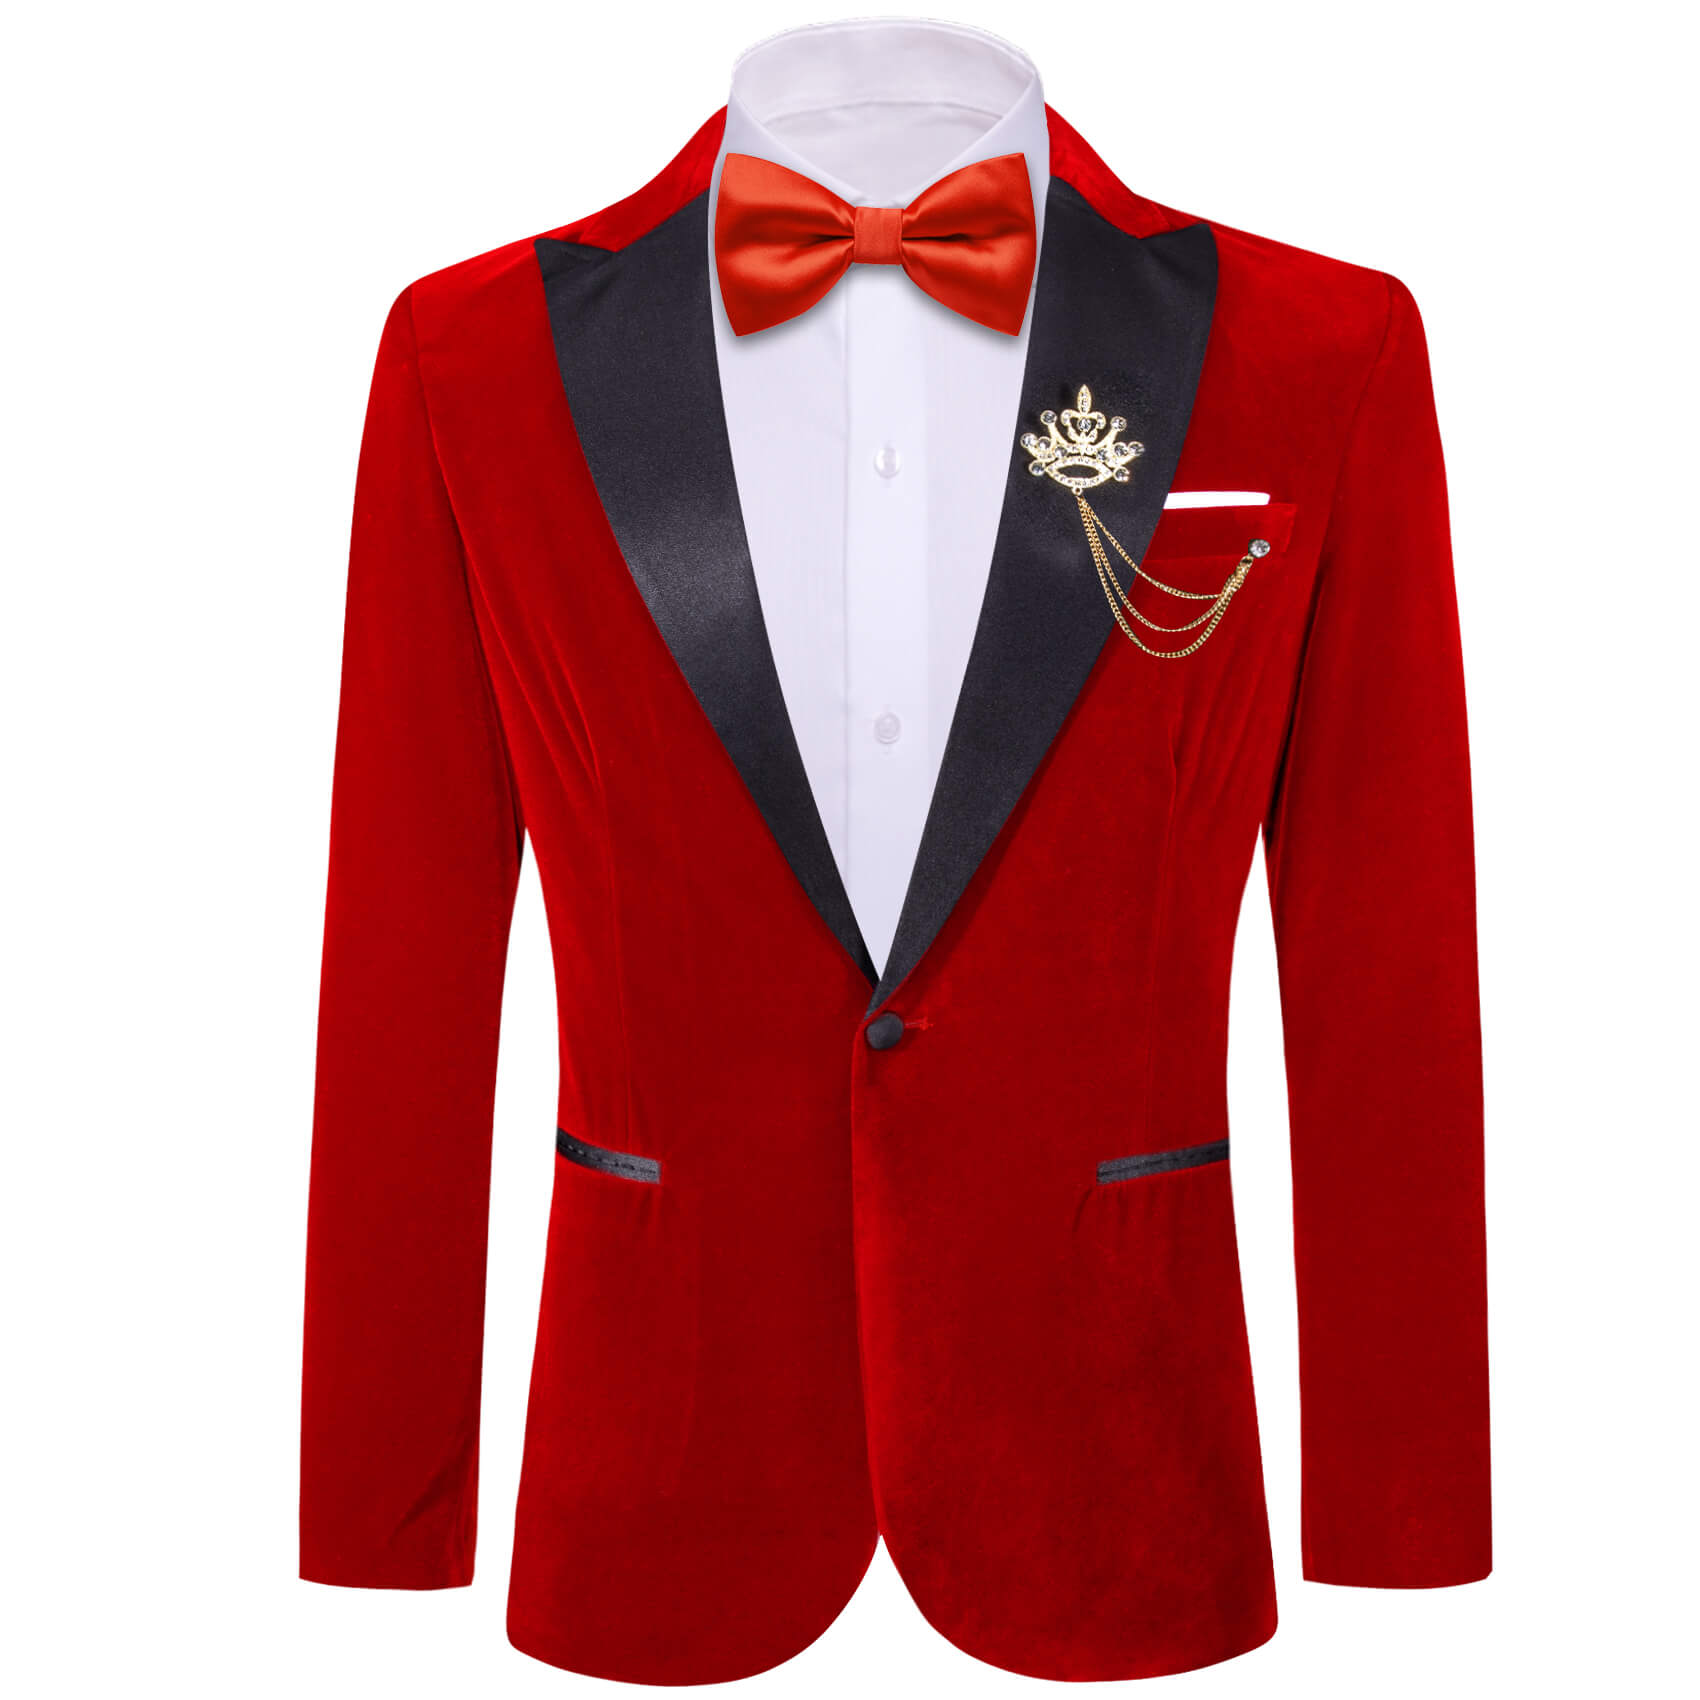 Fire Brick Red Solid Silk Peak Collar Blazer Suit